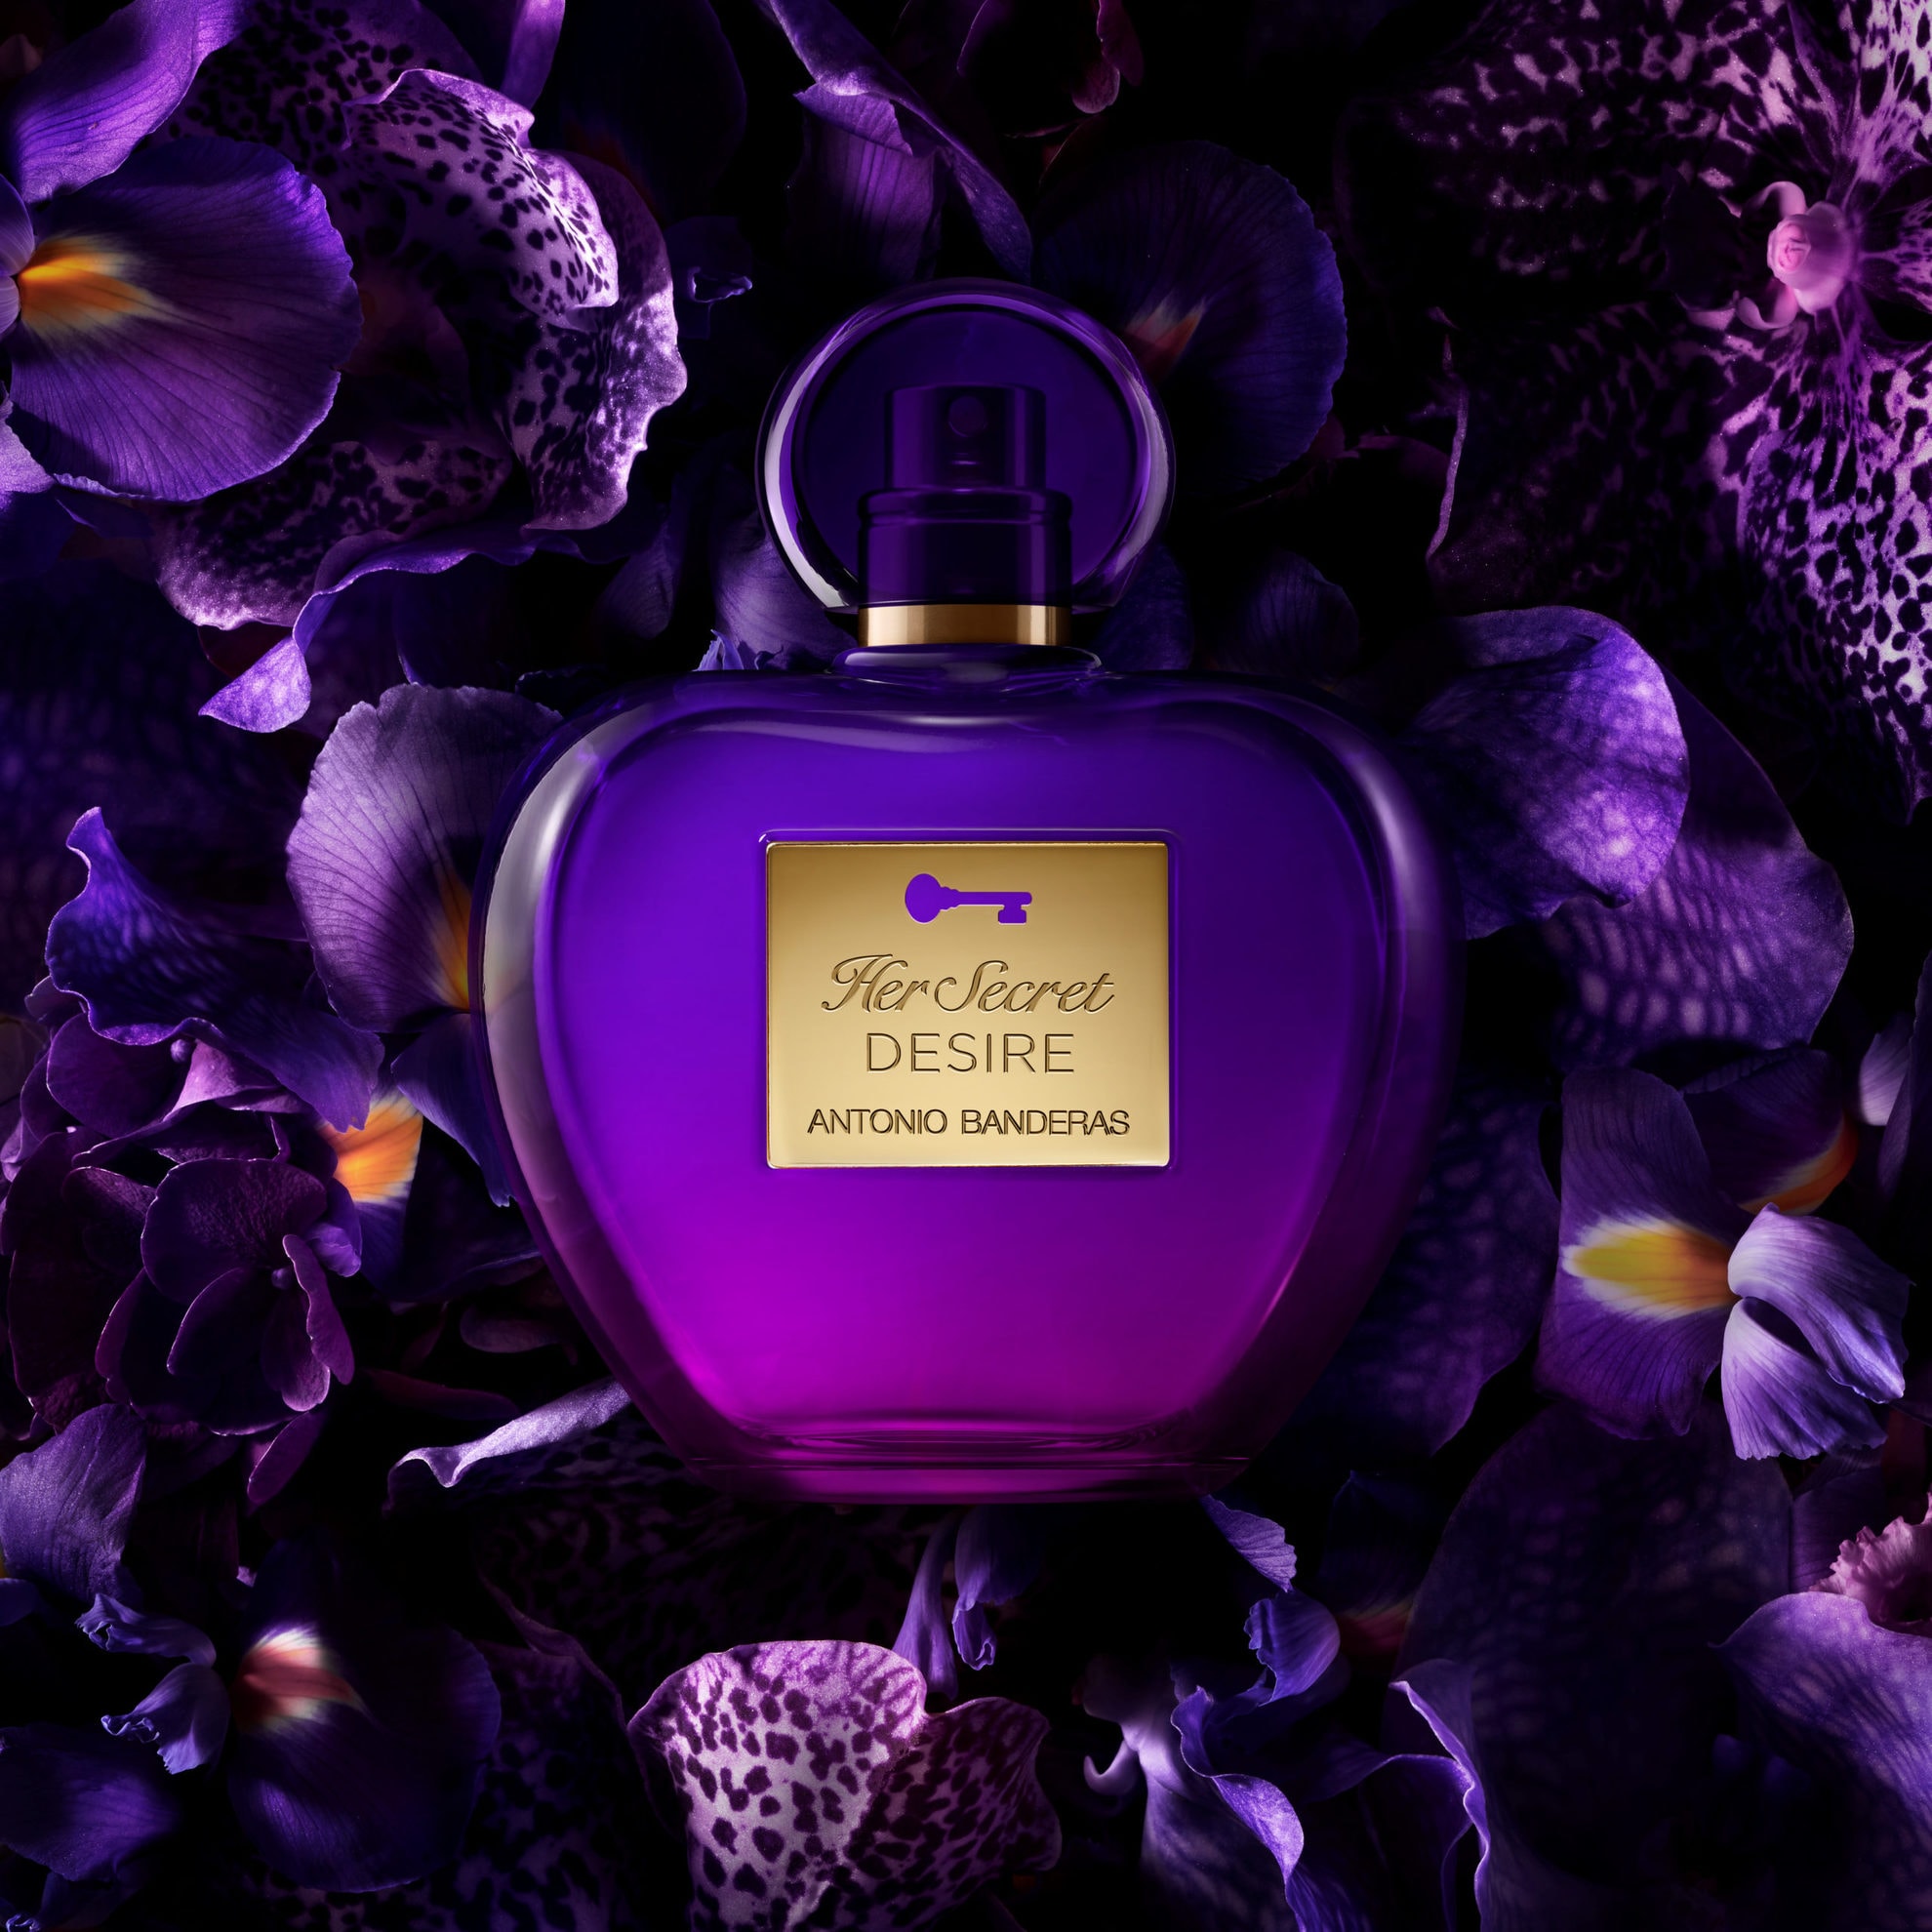 Her Secret Desire » Antonio Banderas » The Parfumerie » Sri Lanka